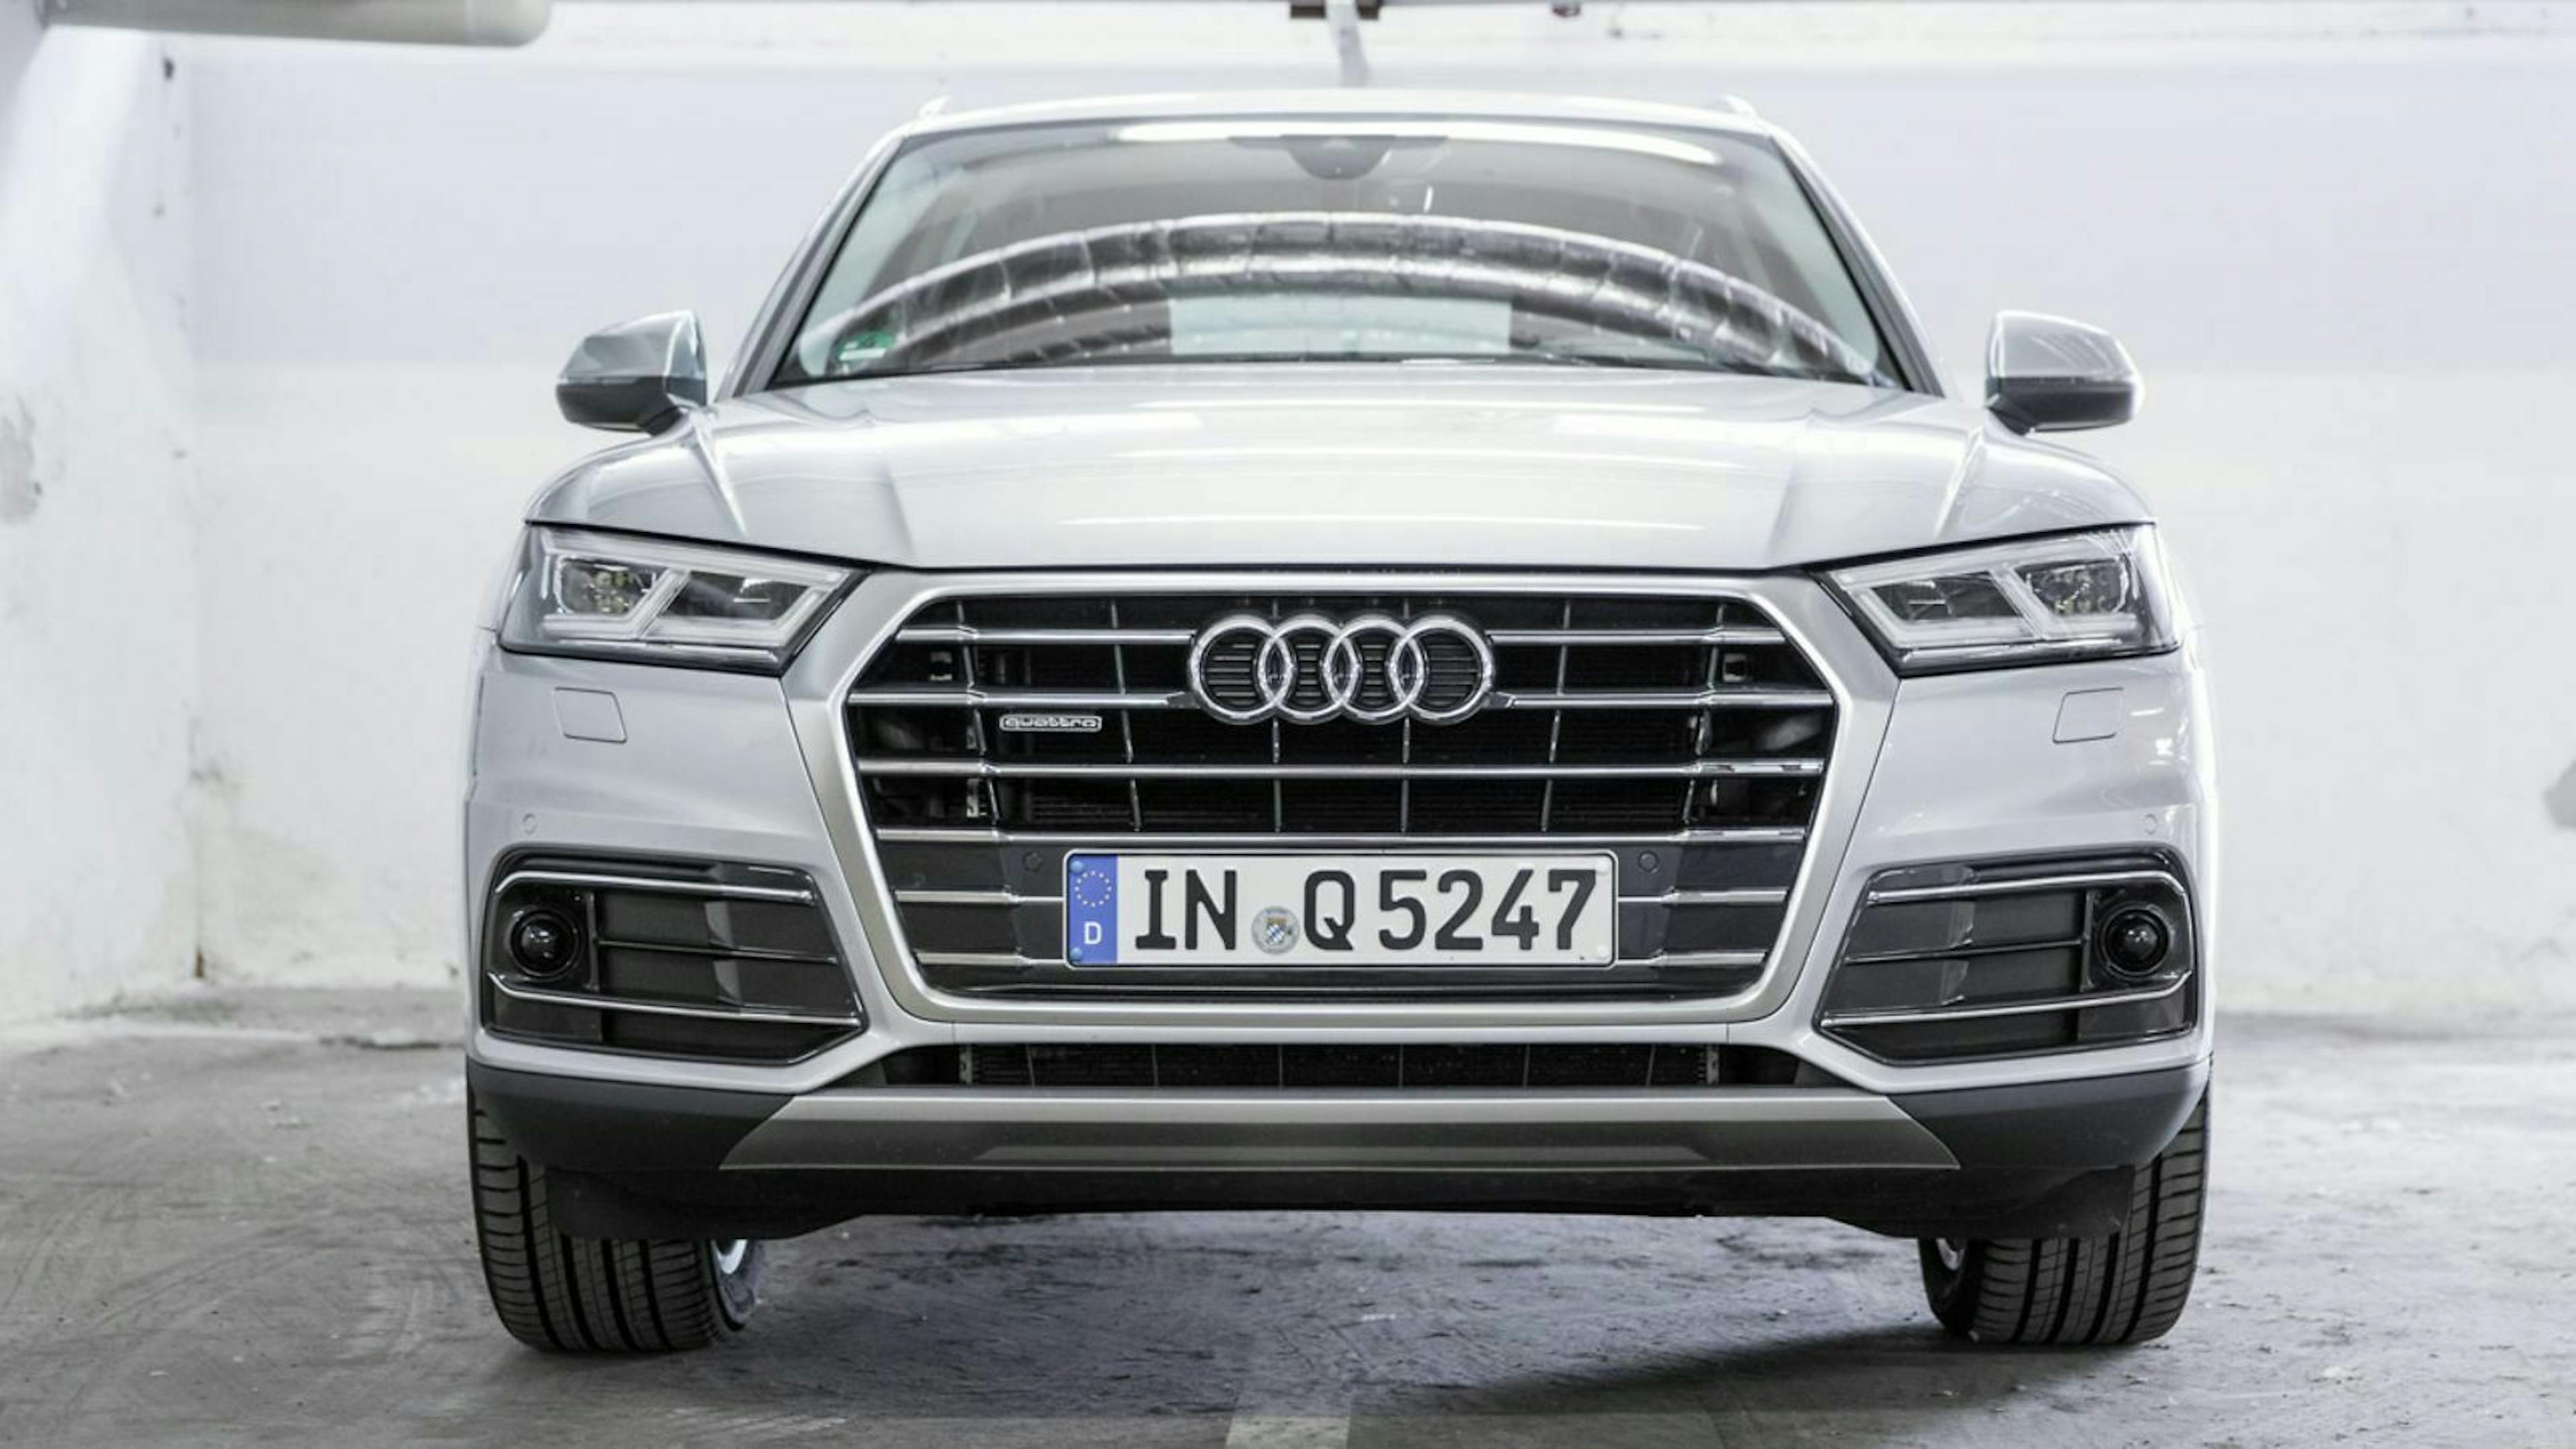 Audi Q5 Frontansicht: In unserem Testwagen steckt ein 2,0-Liter-Diesel mit 190 PS. Damit ist der Audi Q5 gut motorisiert